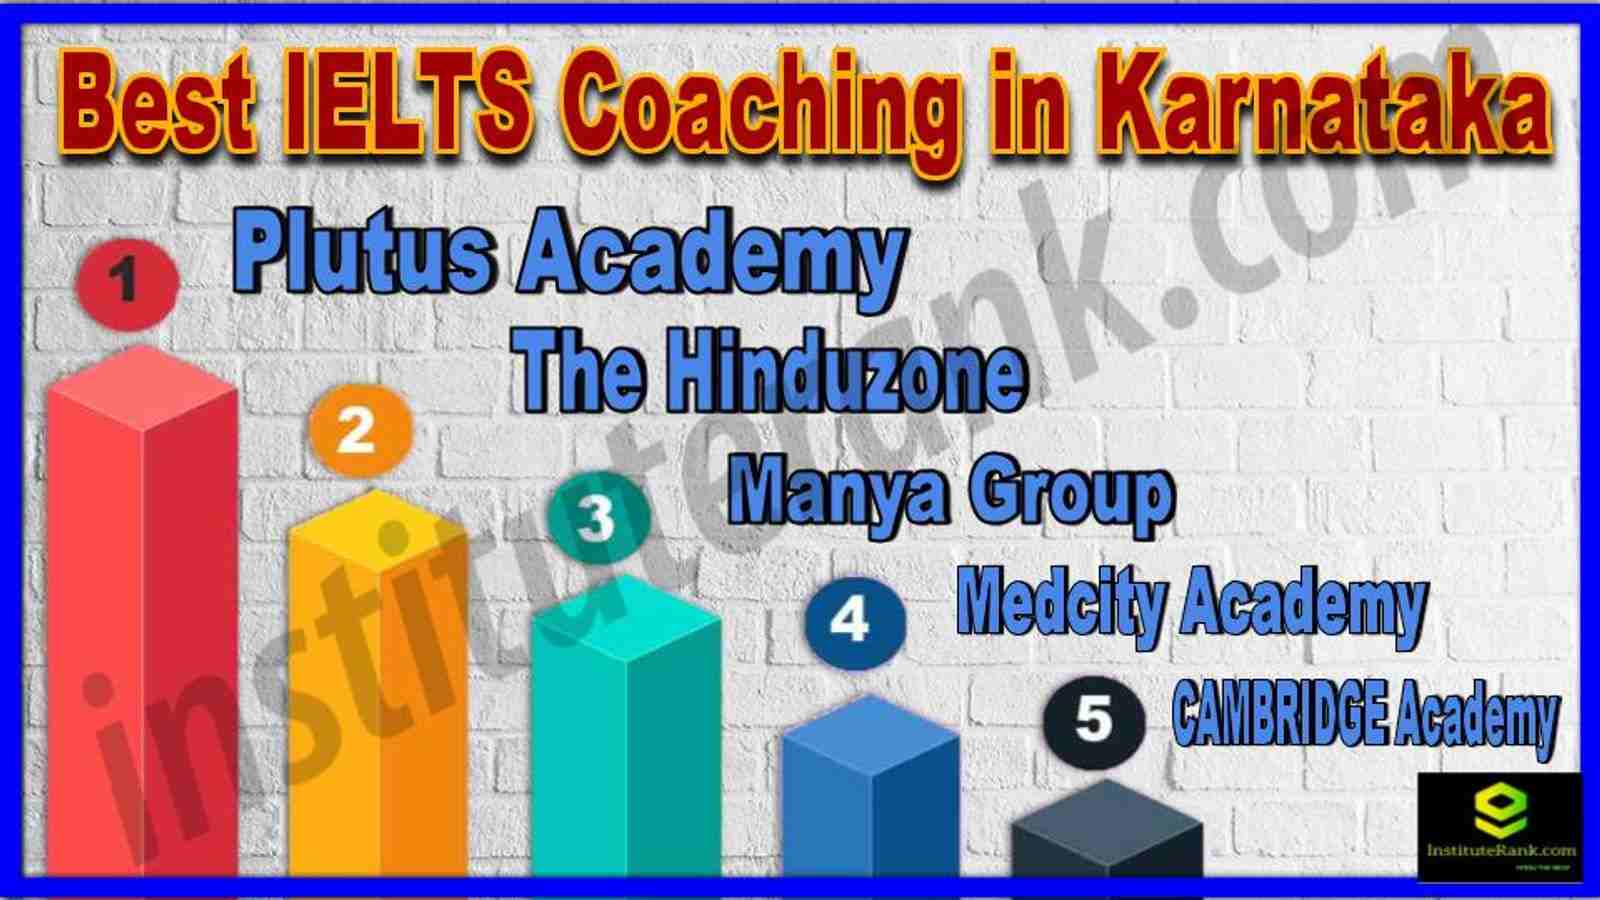 Best IELTS Coaching in Karnataka